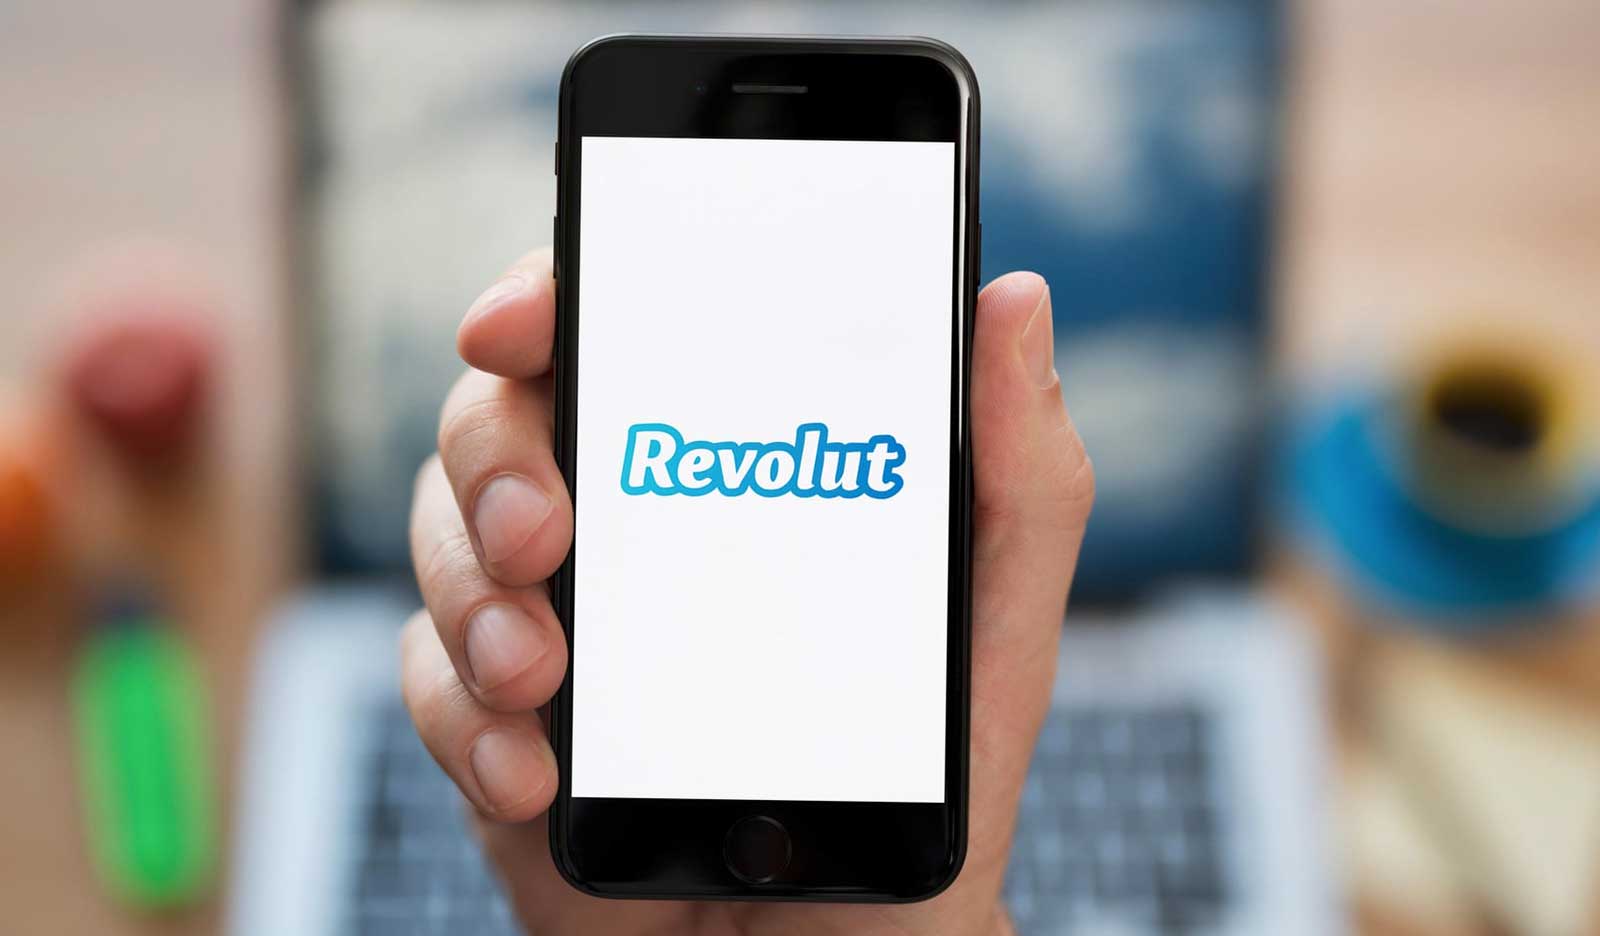 Банковское мобильное приложение Revolut за год регистрирует операции на сумму, превышающую весь ВВП Литвы.